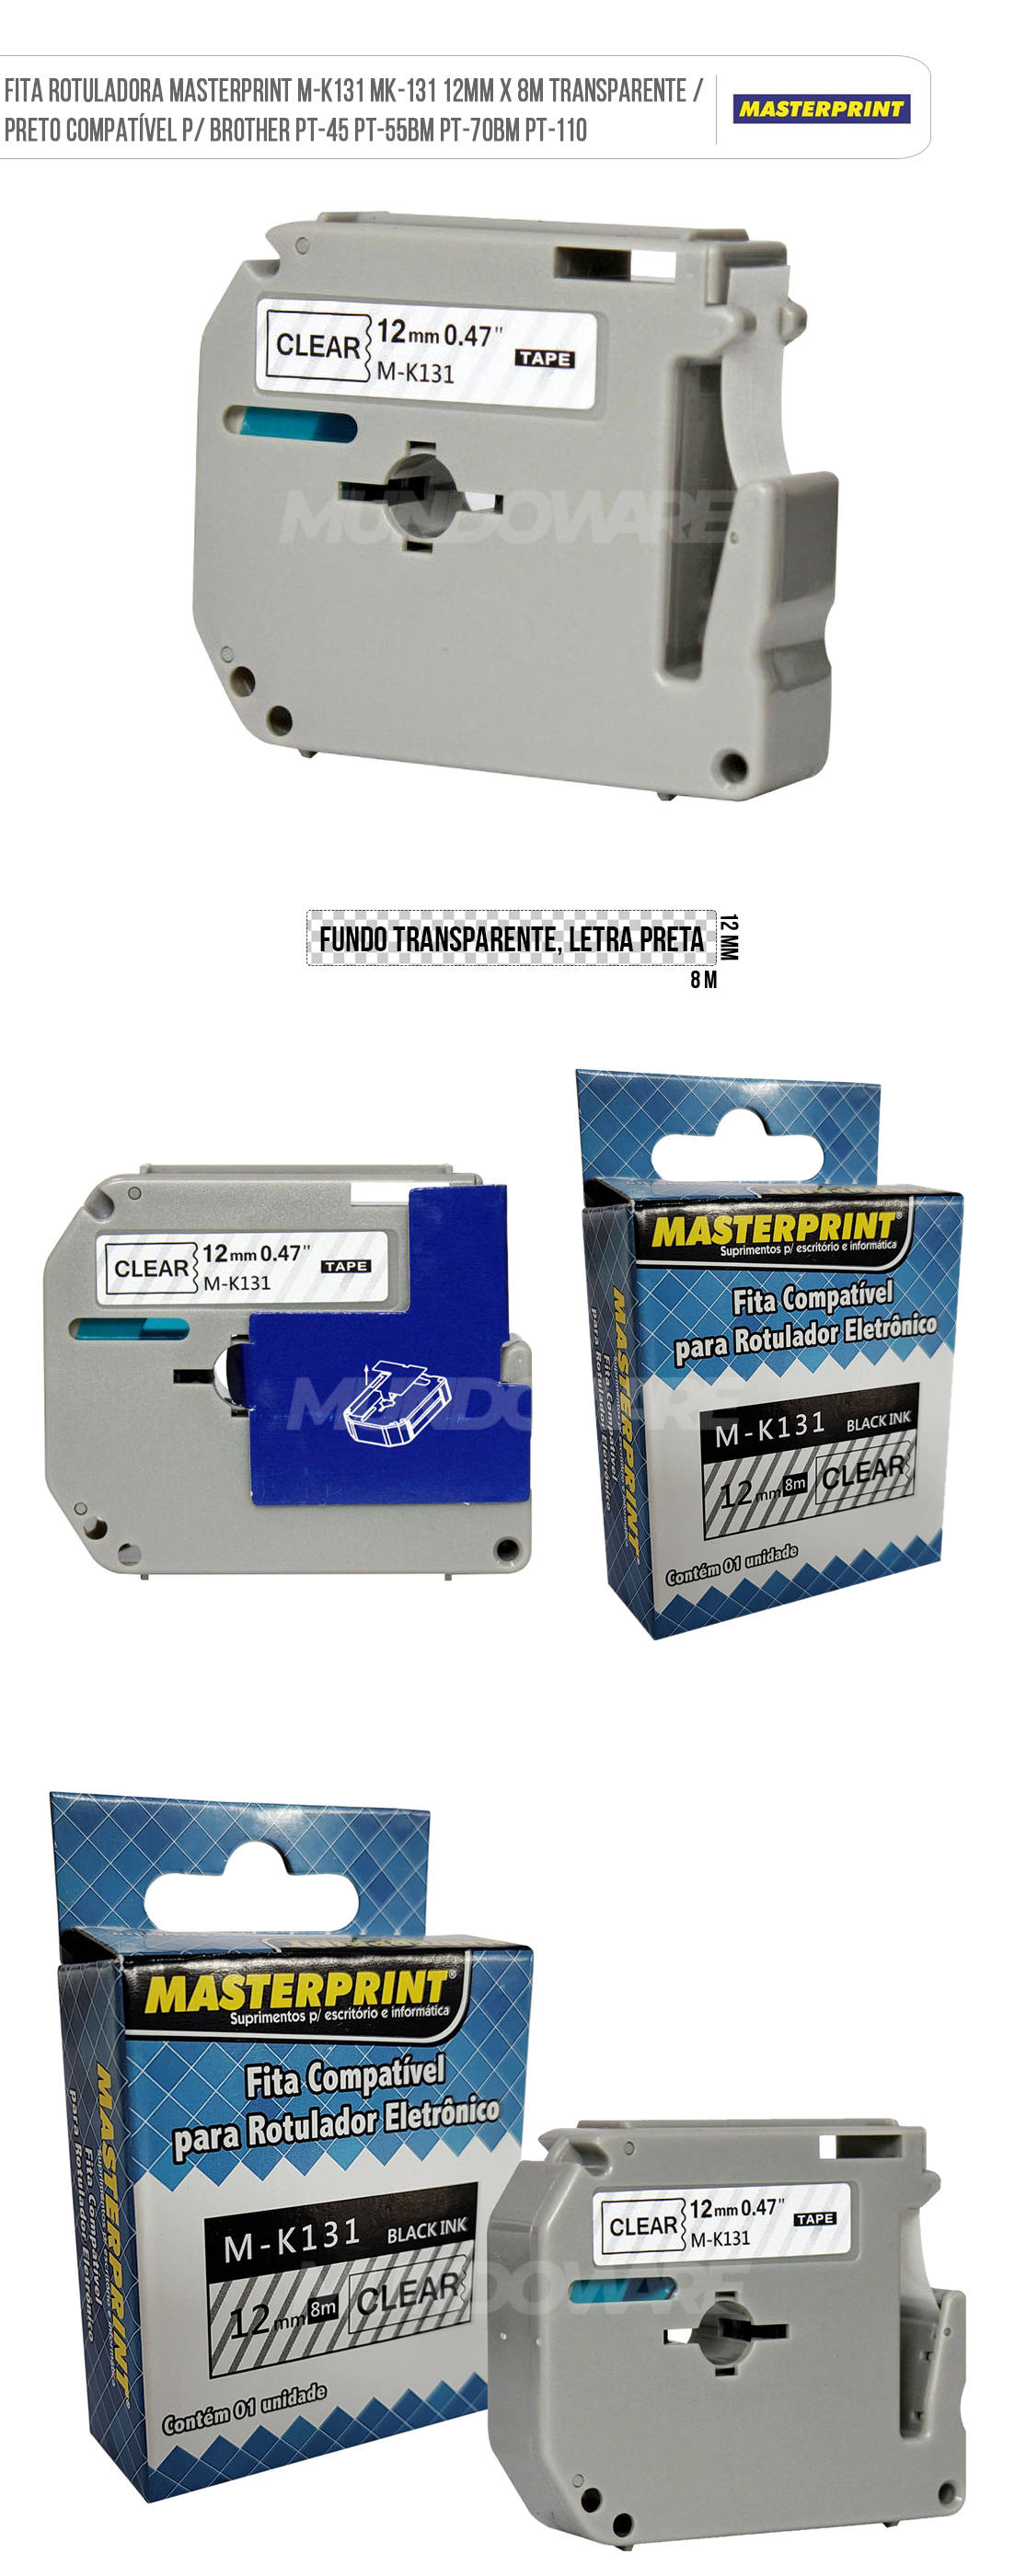 Fita para Rotulador Masterprint M-K131 MK-131 12mm x 8m Transparente/Preto Compatvel para Brother PT-45 PT-55BM PT-70BM